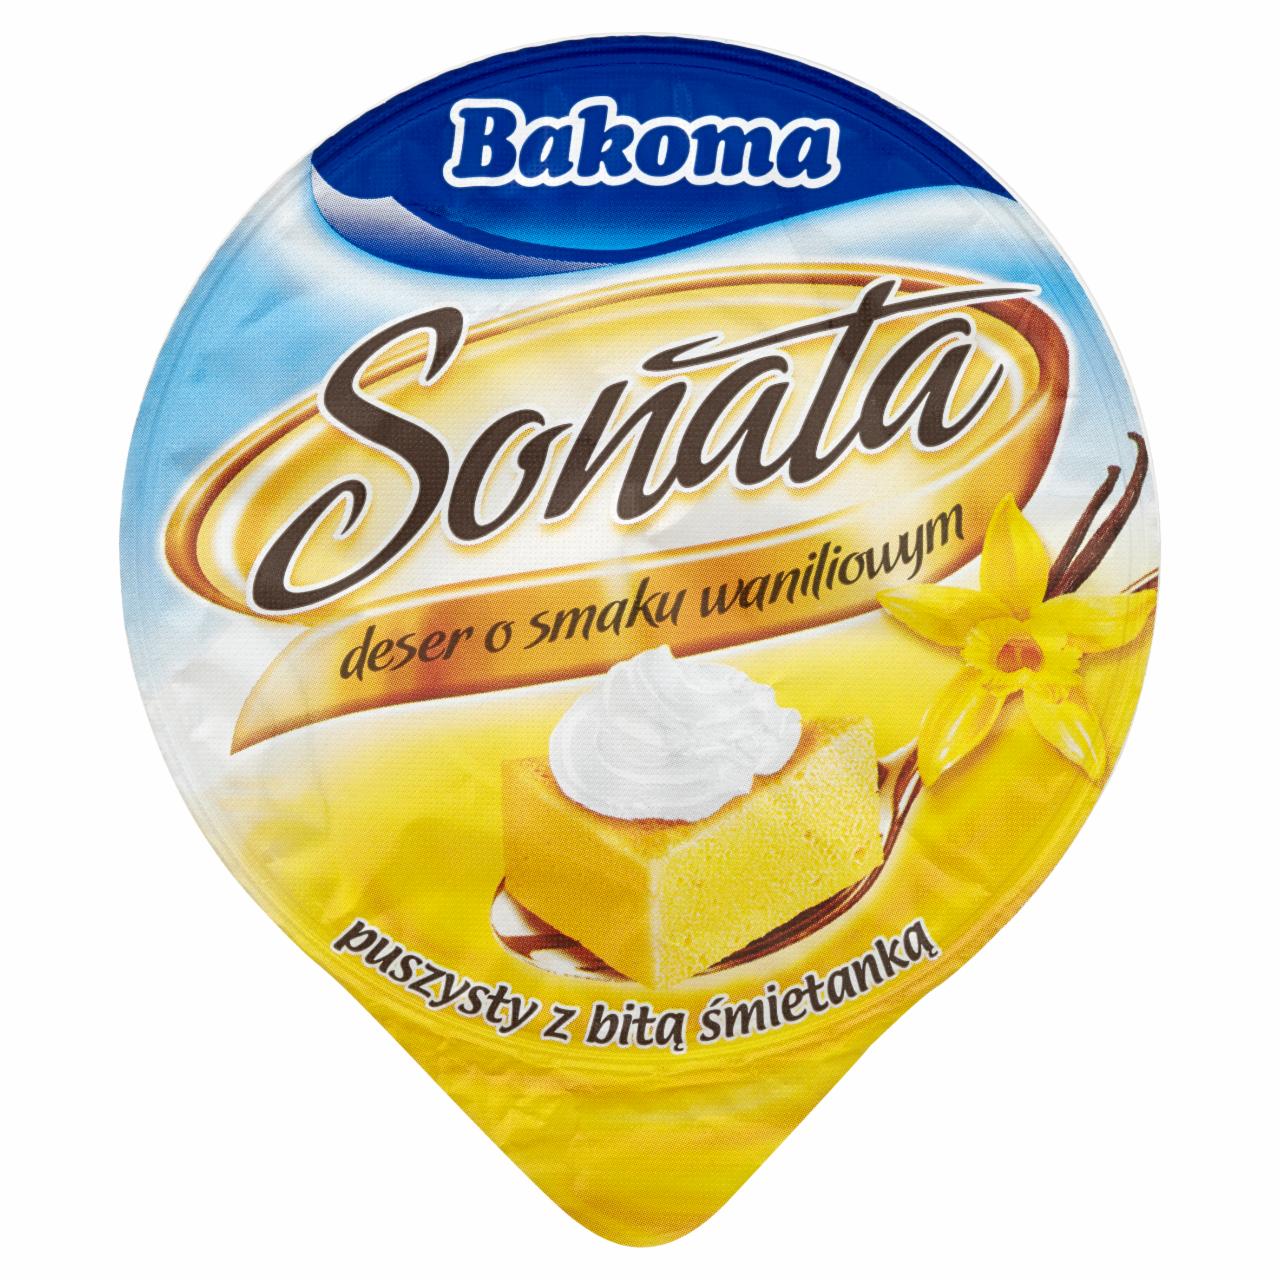 Zdjęcia - Bakoma Sonata Deser o smaku waniliowym puszysty z bitą śmietanką 90 g